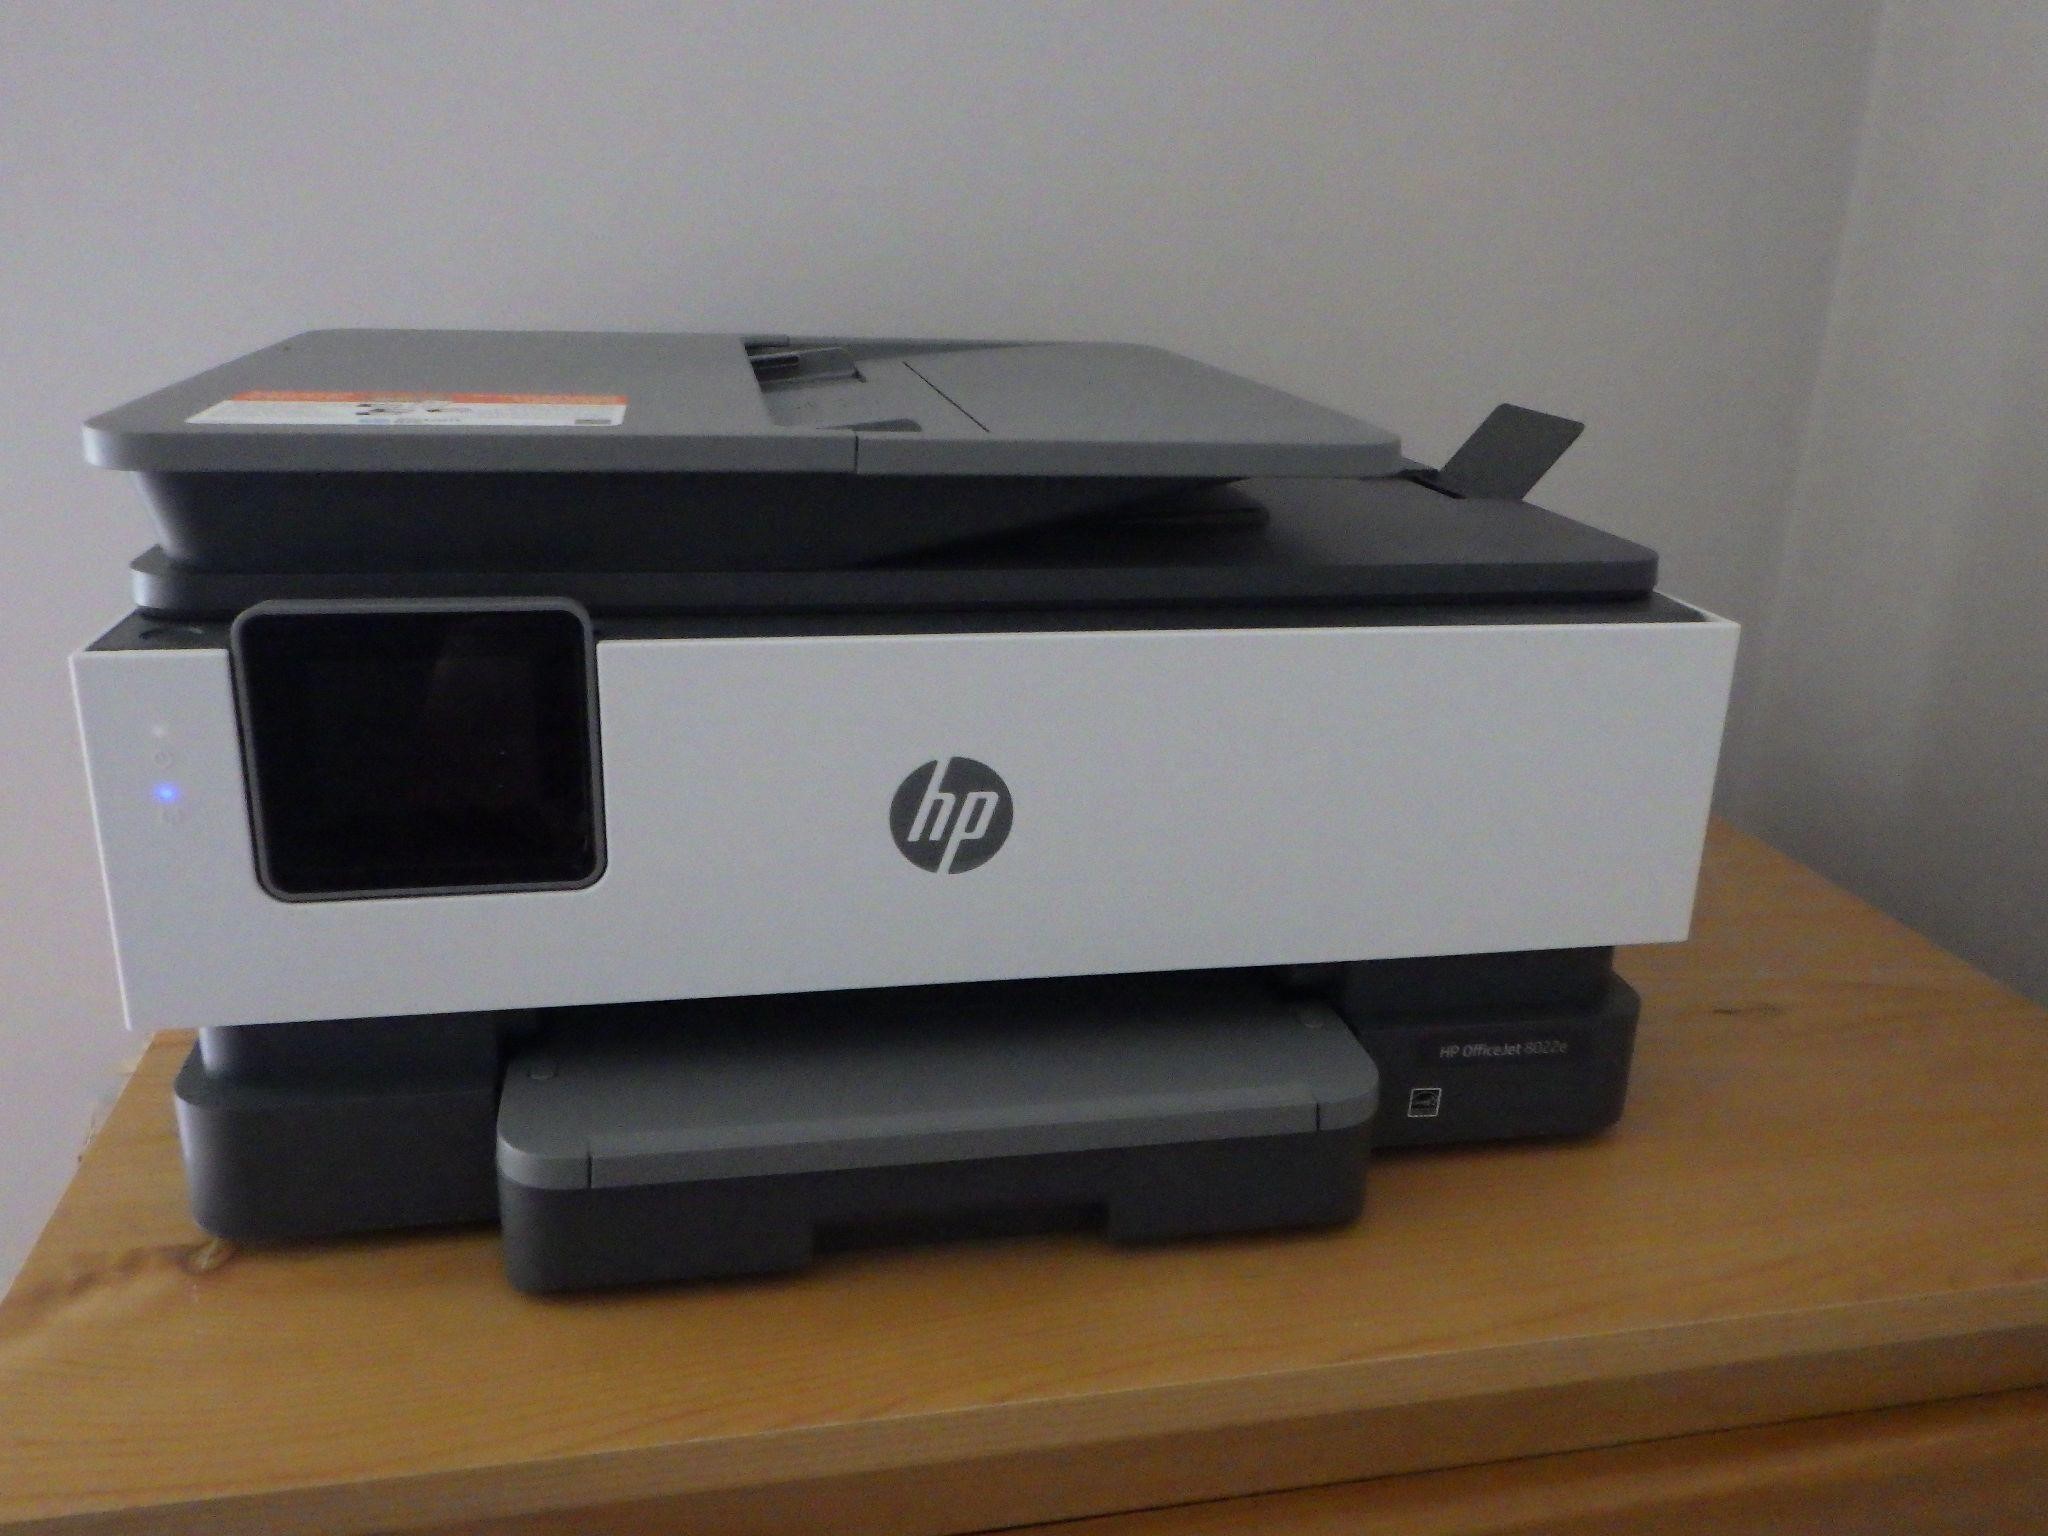 HP Office Jet Printer Model 8022E